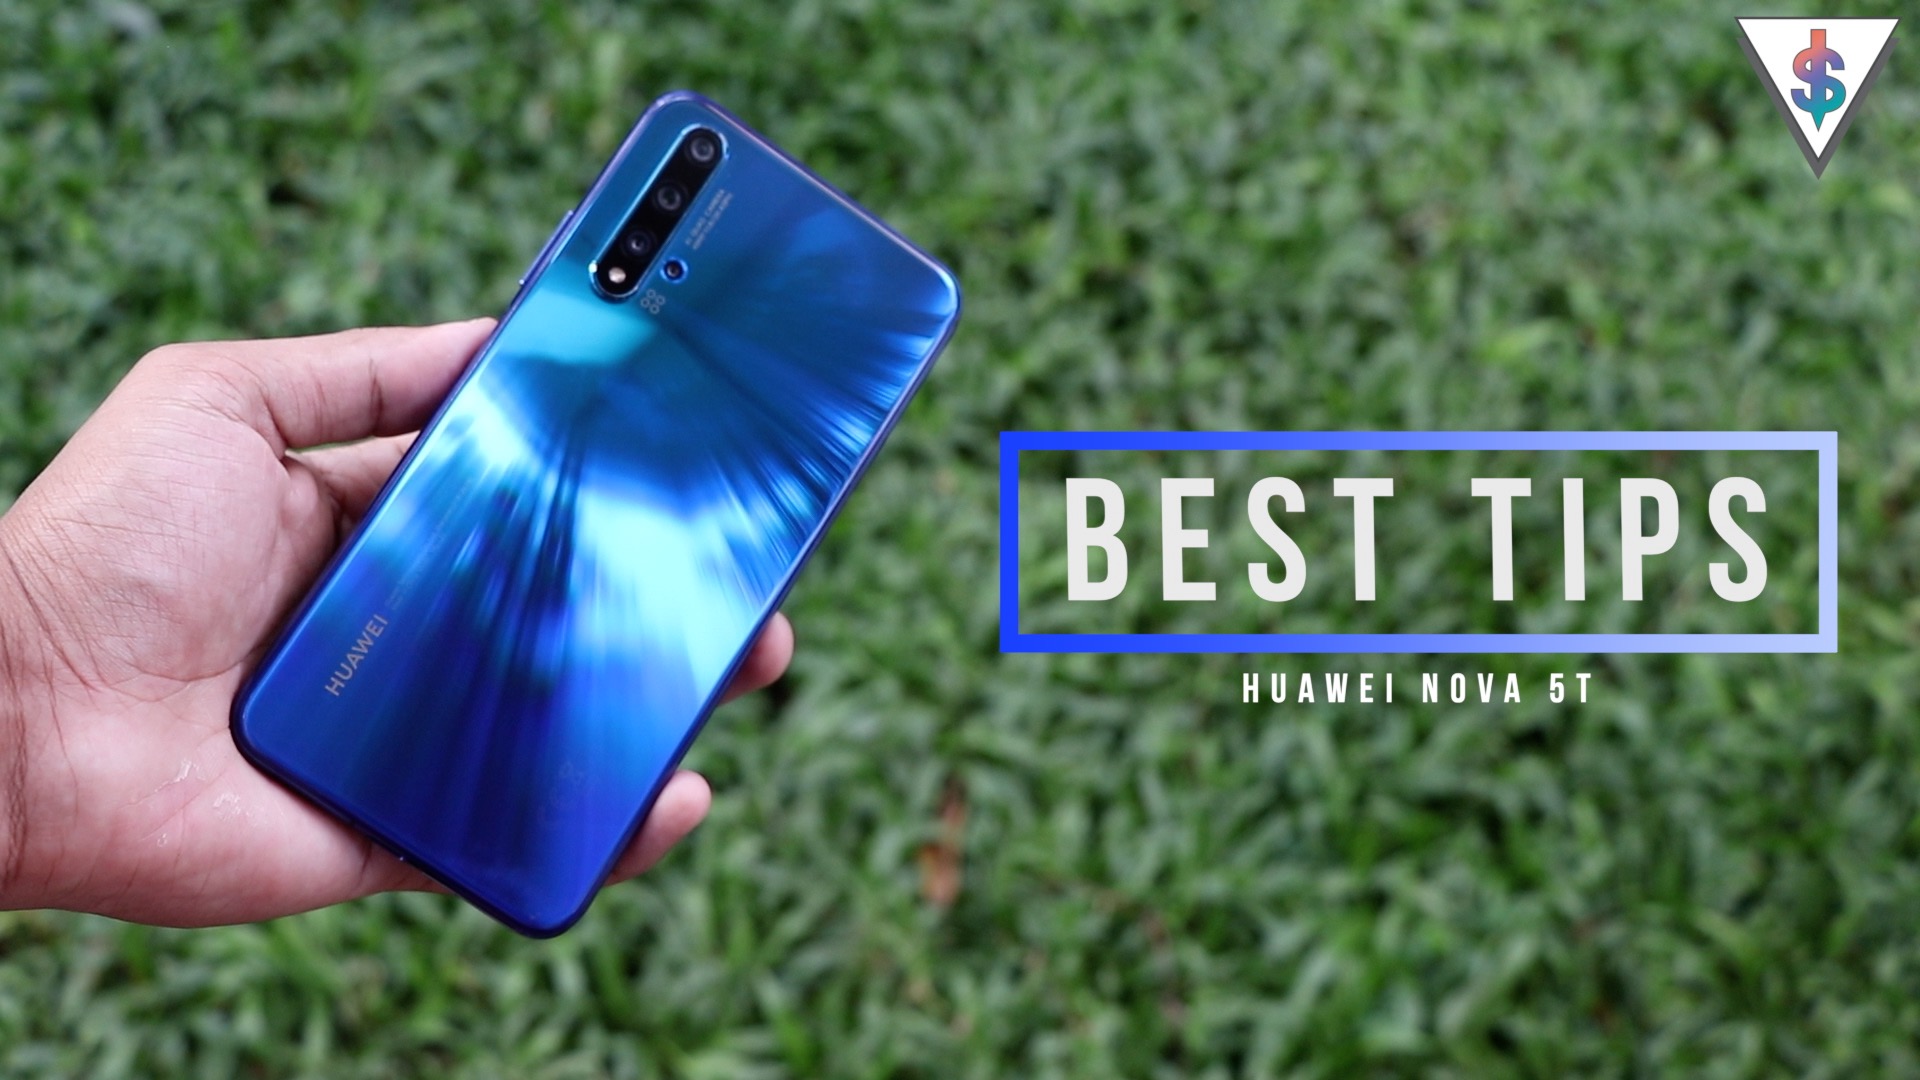 Nova 5t tips - Best Tips for the Huawei Nova 5T